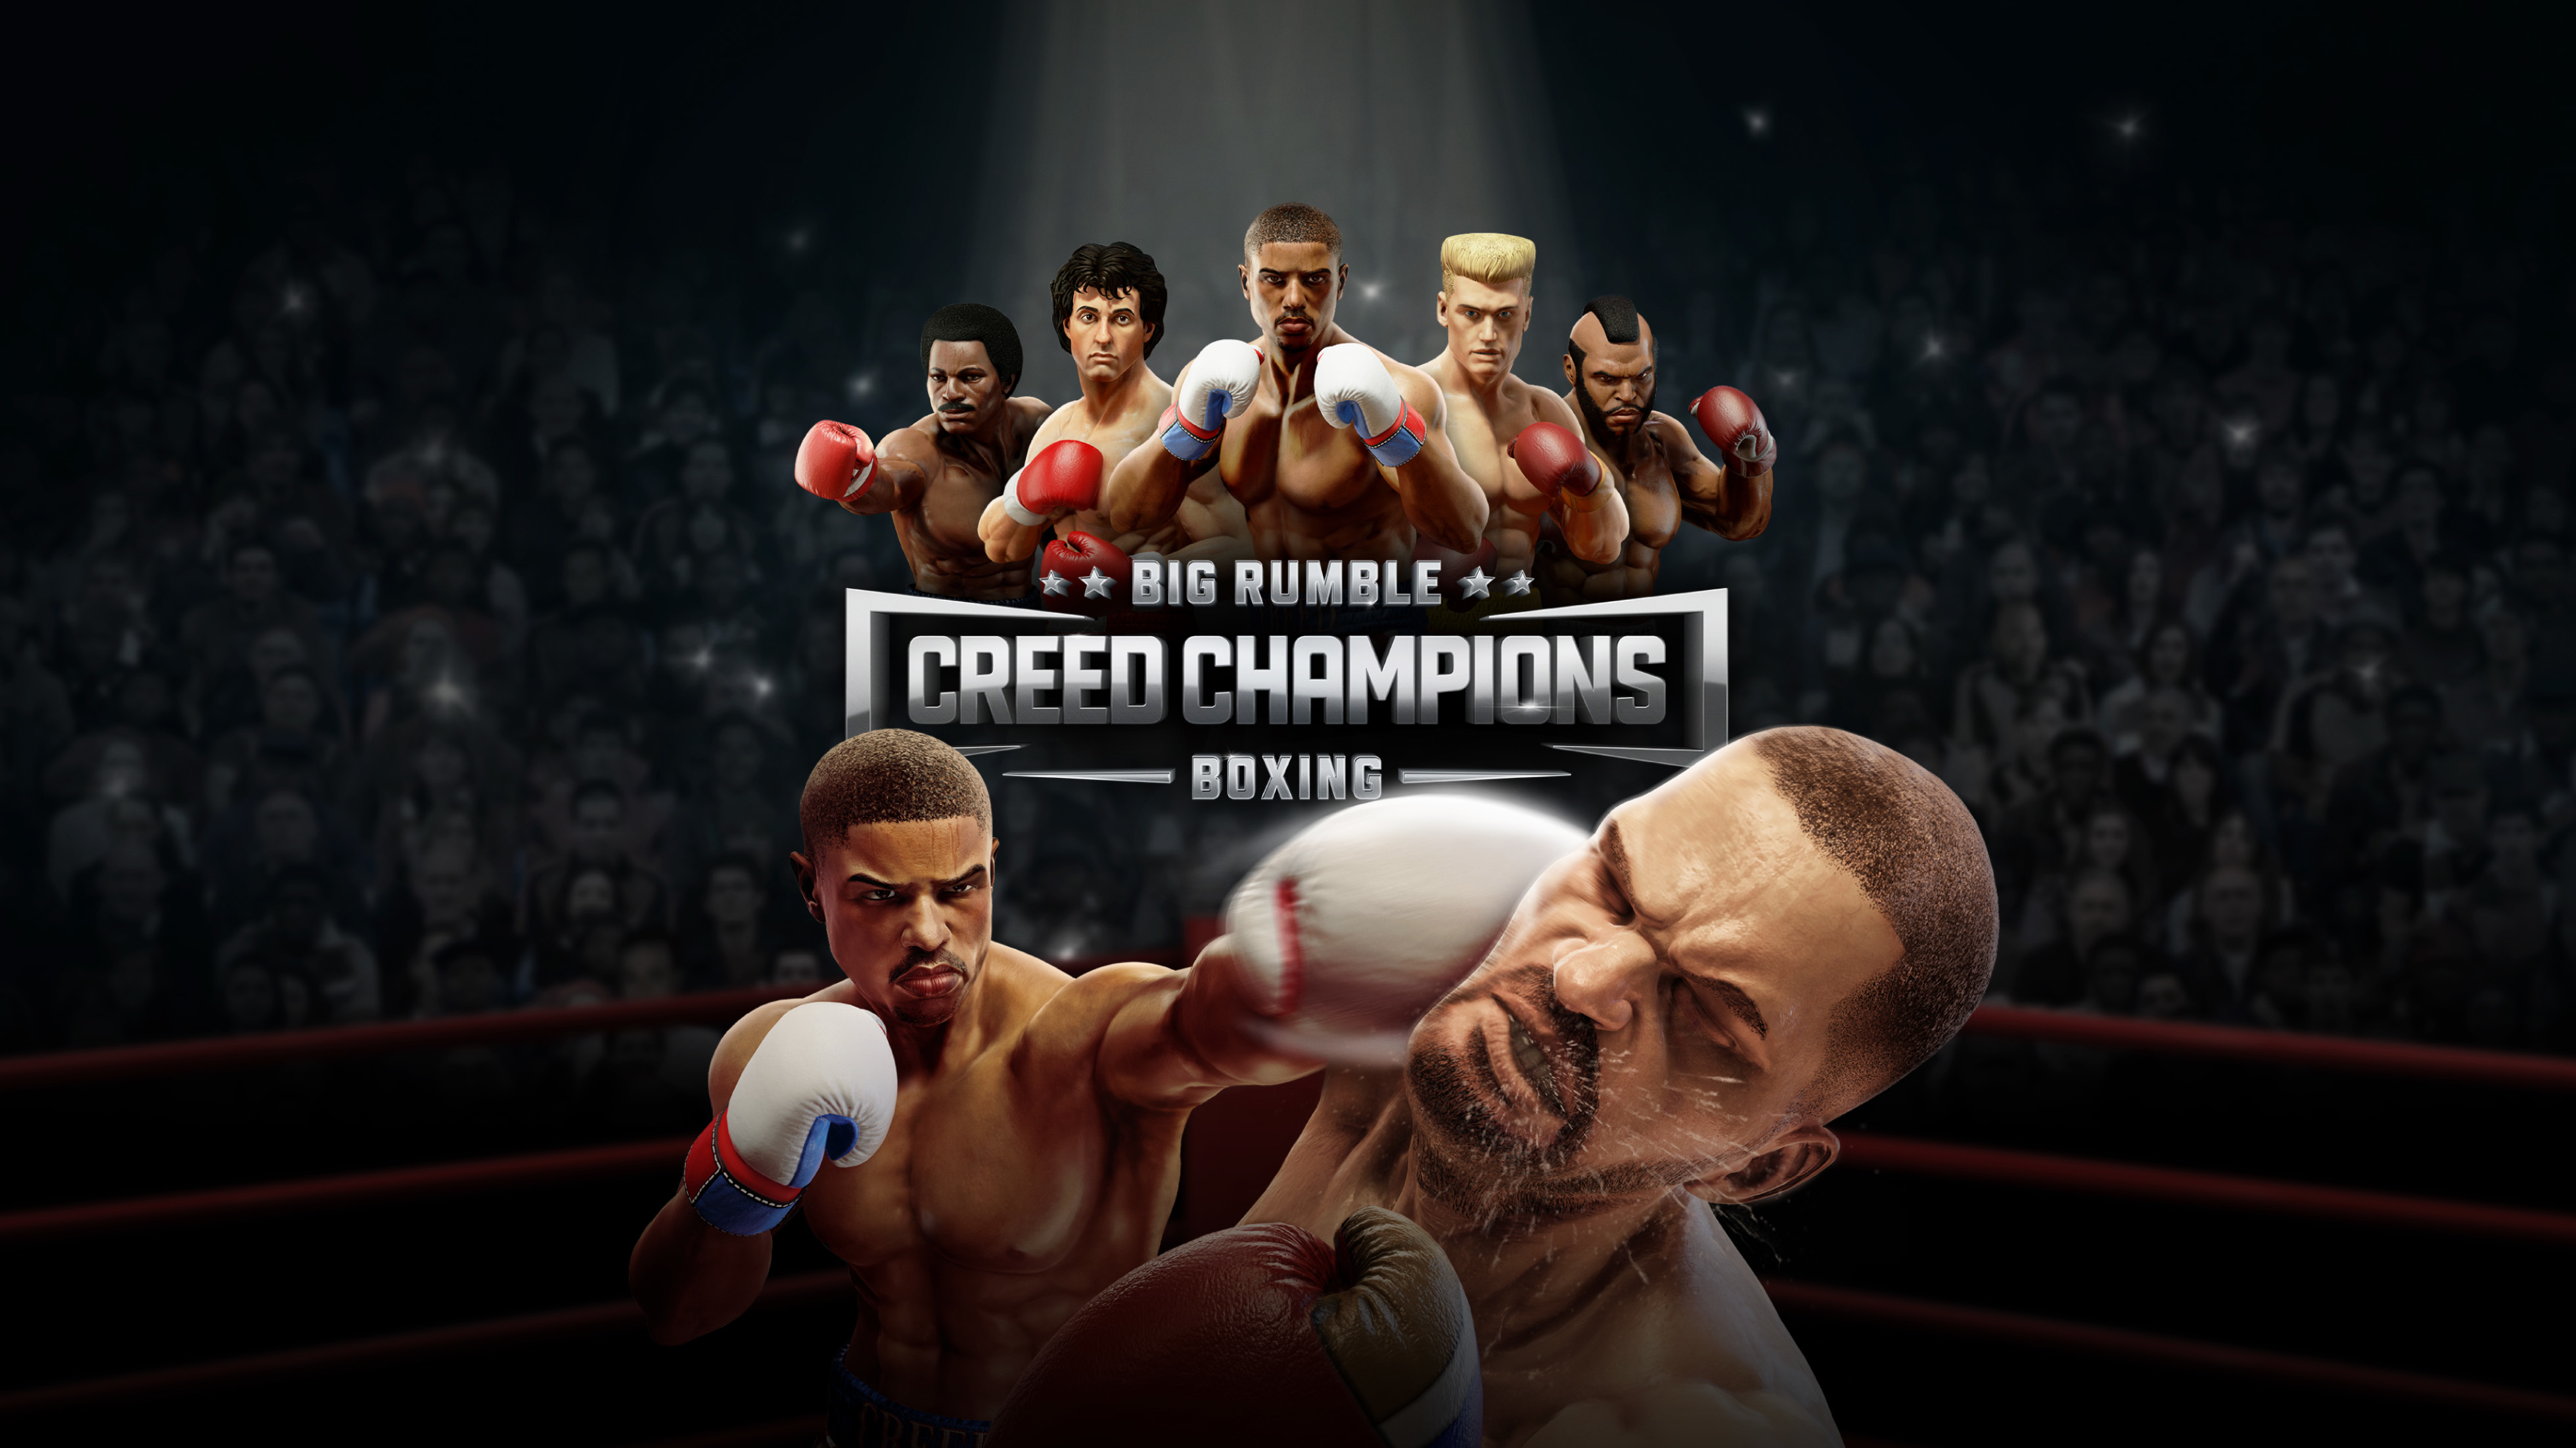 Игра супер бокс. Big Rumble Boxing: Creed Champions. Big Rumble Boxing: Creed Champions ps4. Ps3 big Rumble Boxing. Big Rumble Boxing Creed Champions Nintendo.